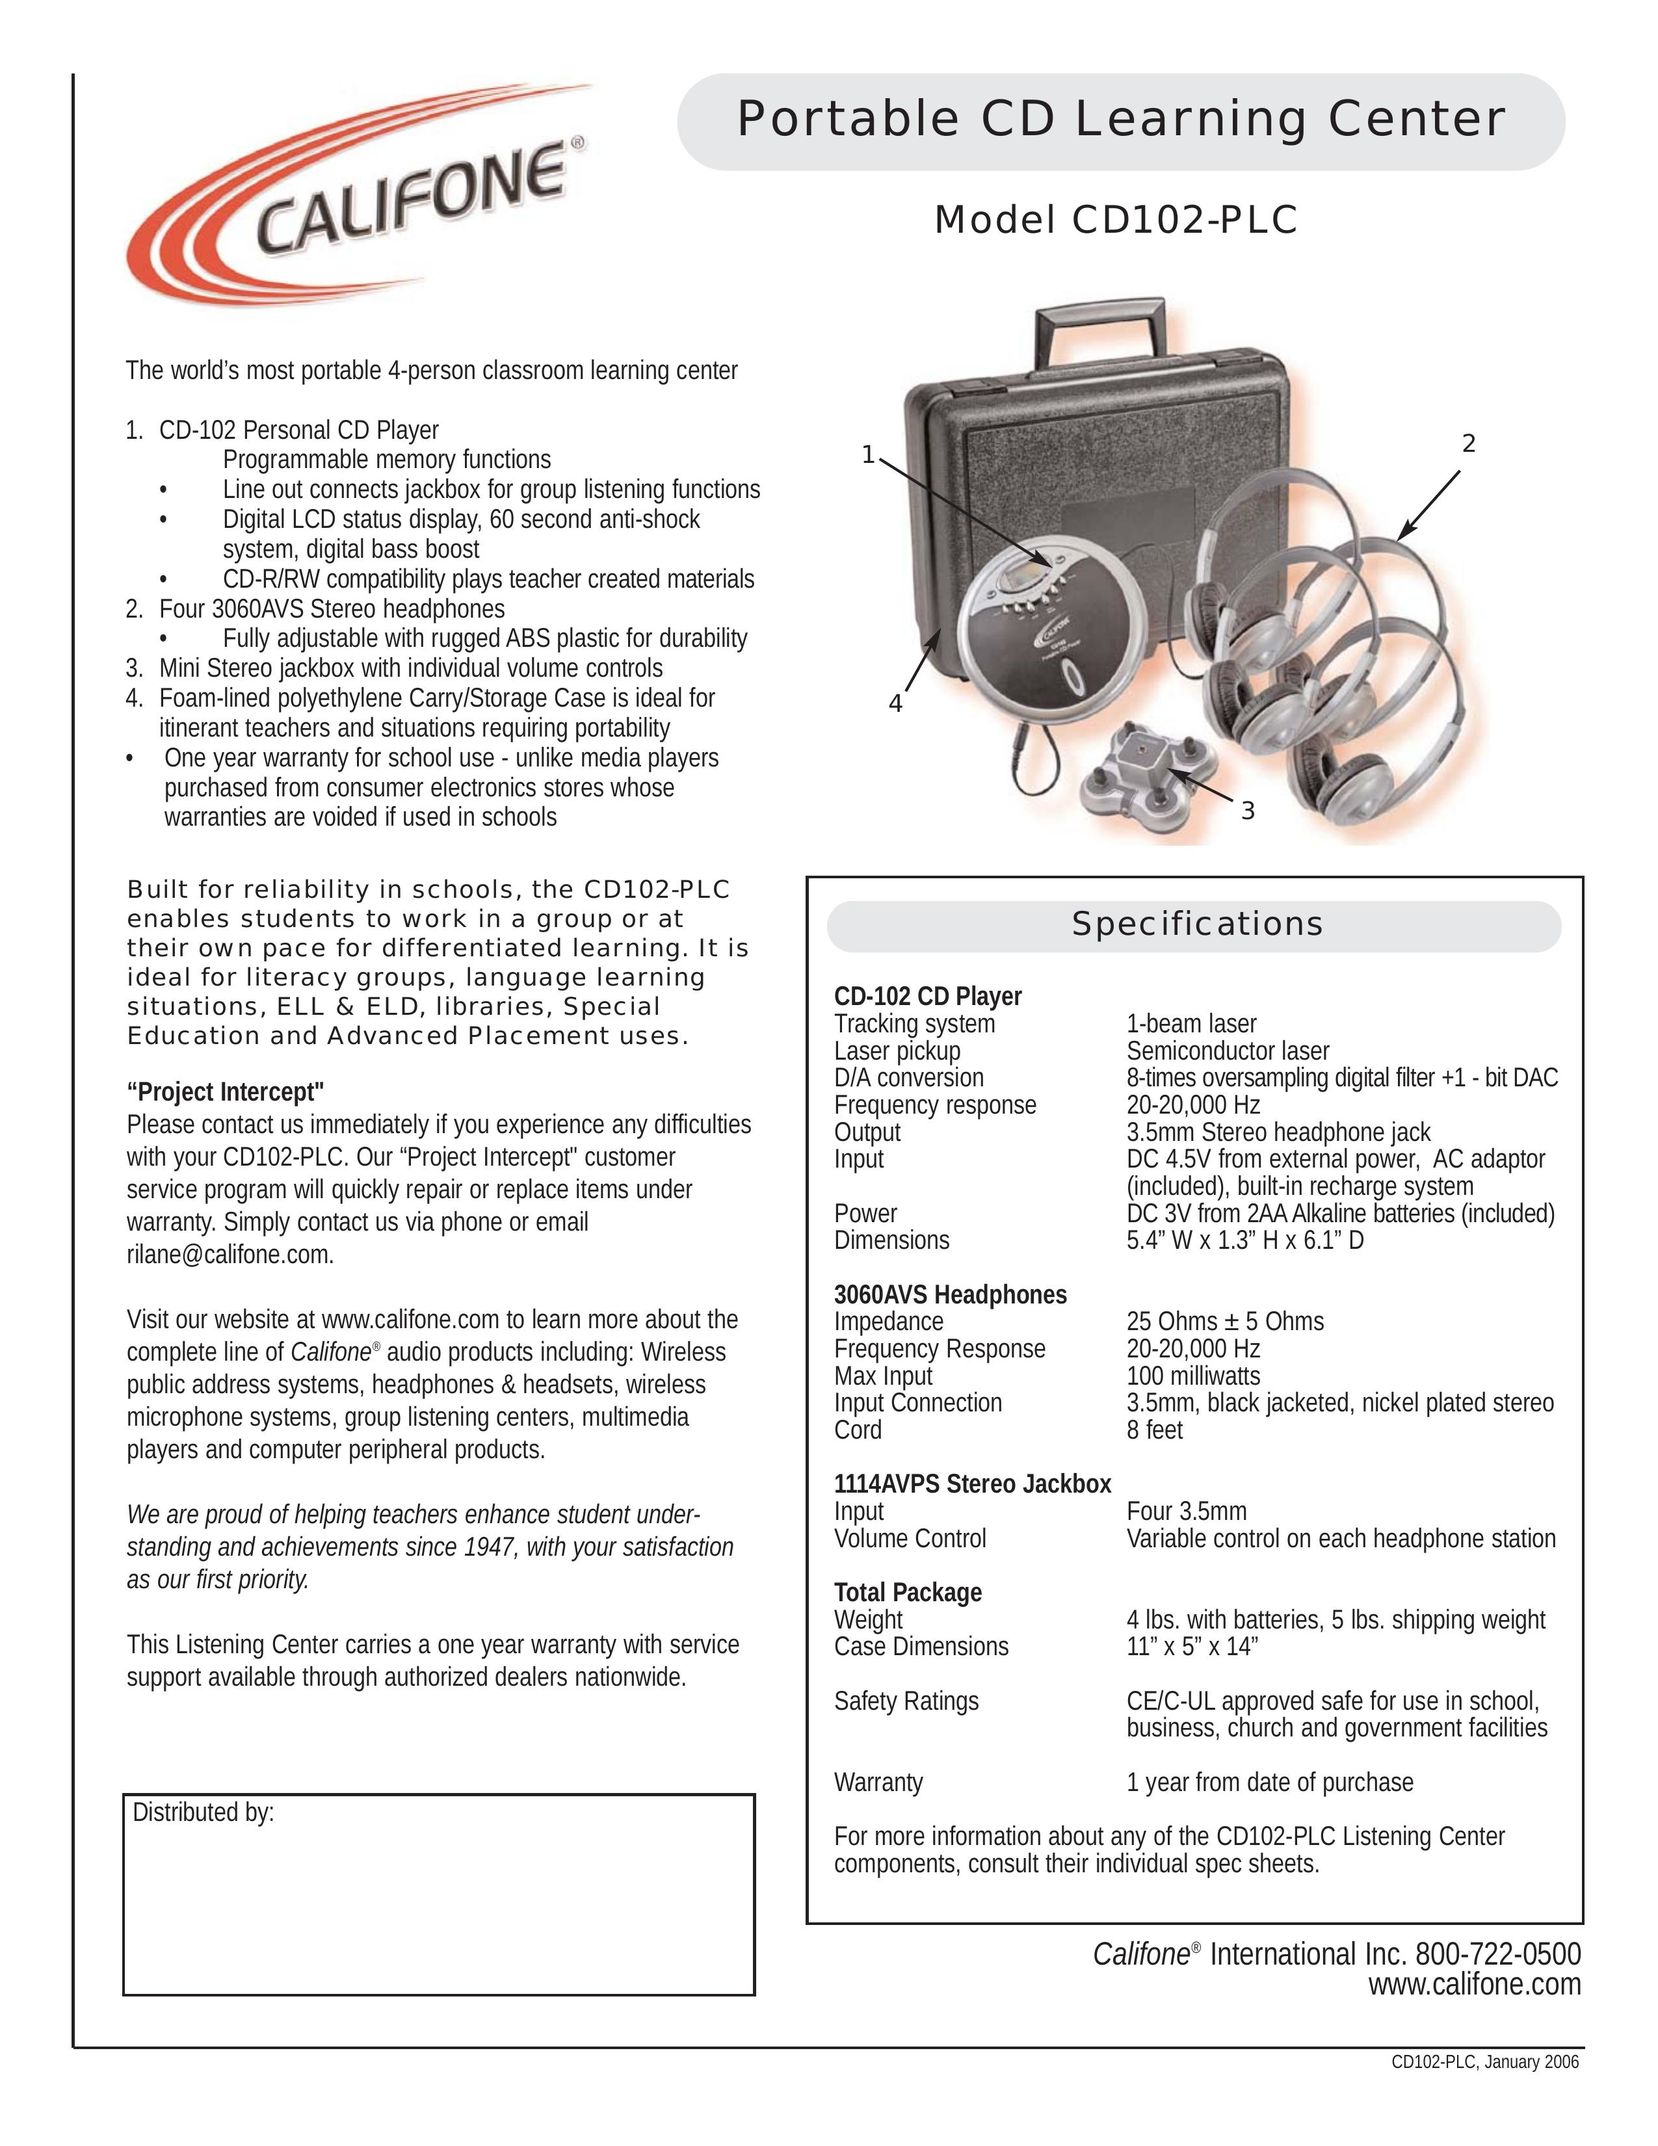 Califone CD102-PLC CD Player User Manual